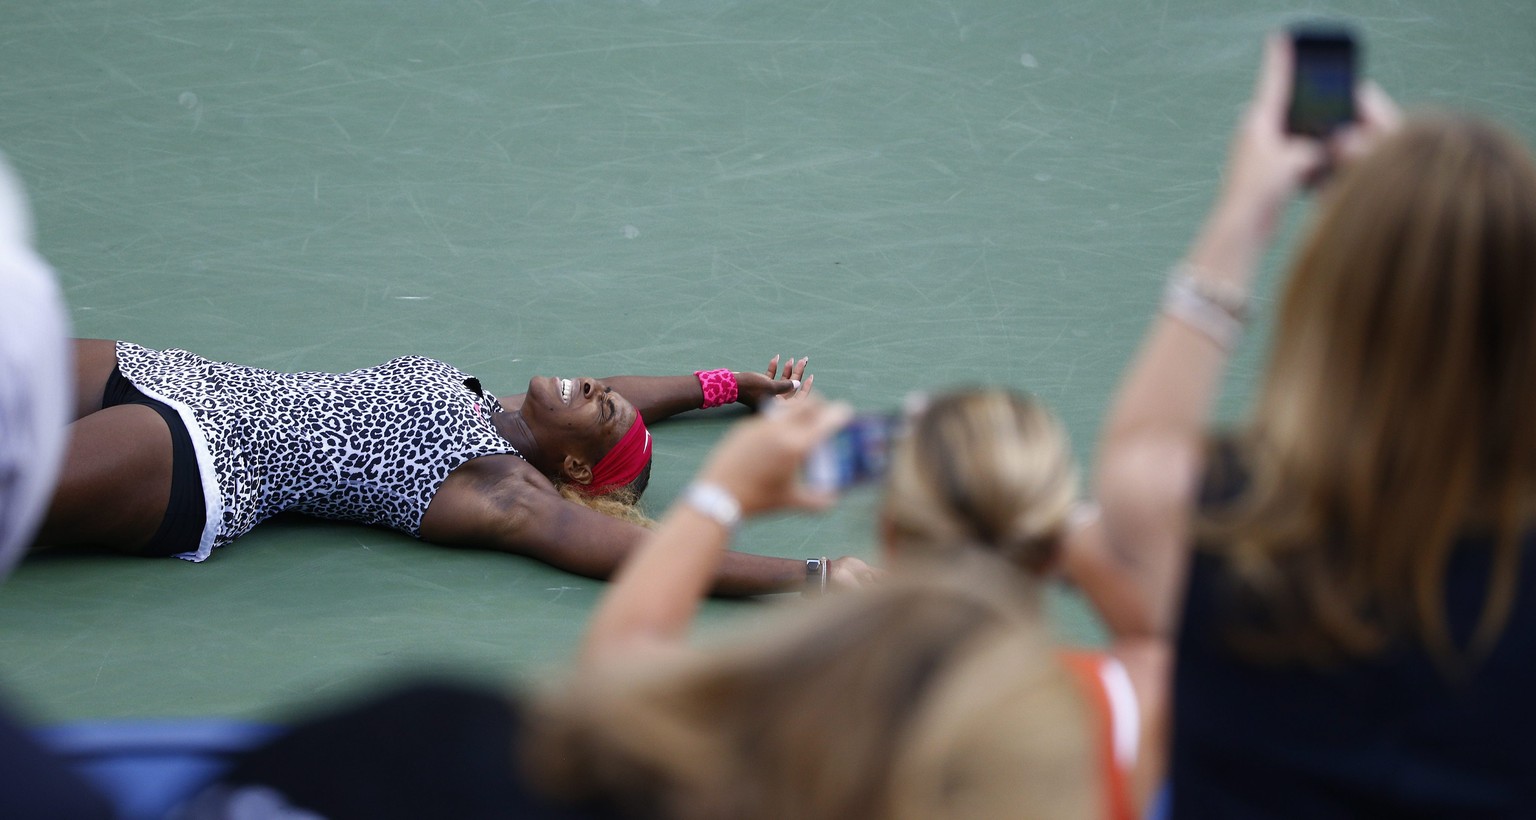 Da freut sich jemand über den 18. Grand-Slam-Titel: Serena Williams nach ihrem Sieg gegen&nbsp;Caroline Wozniacki.